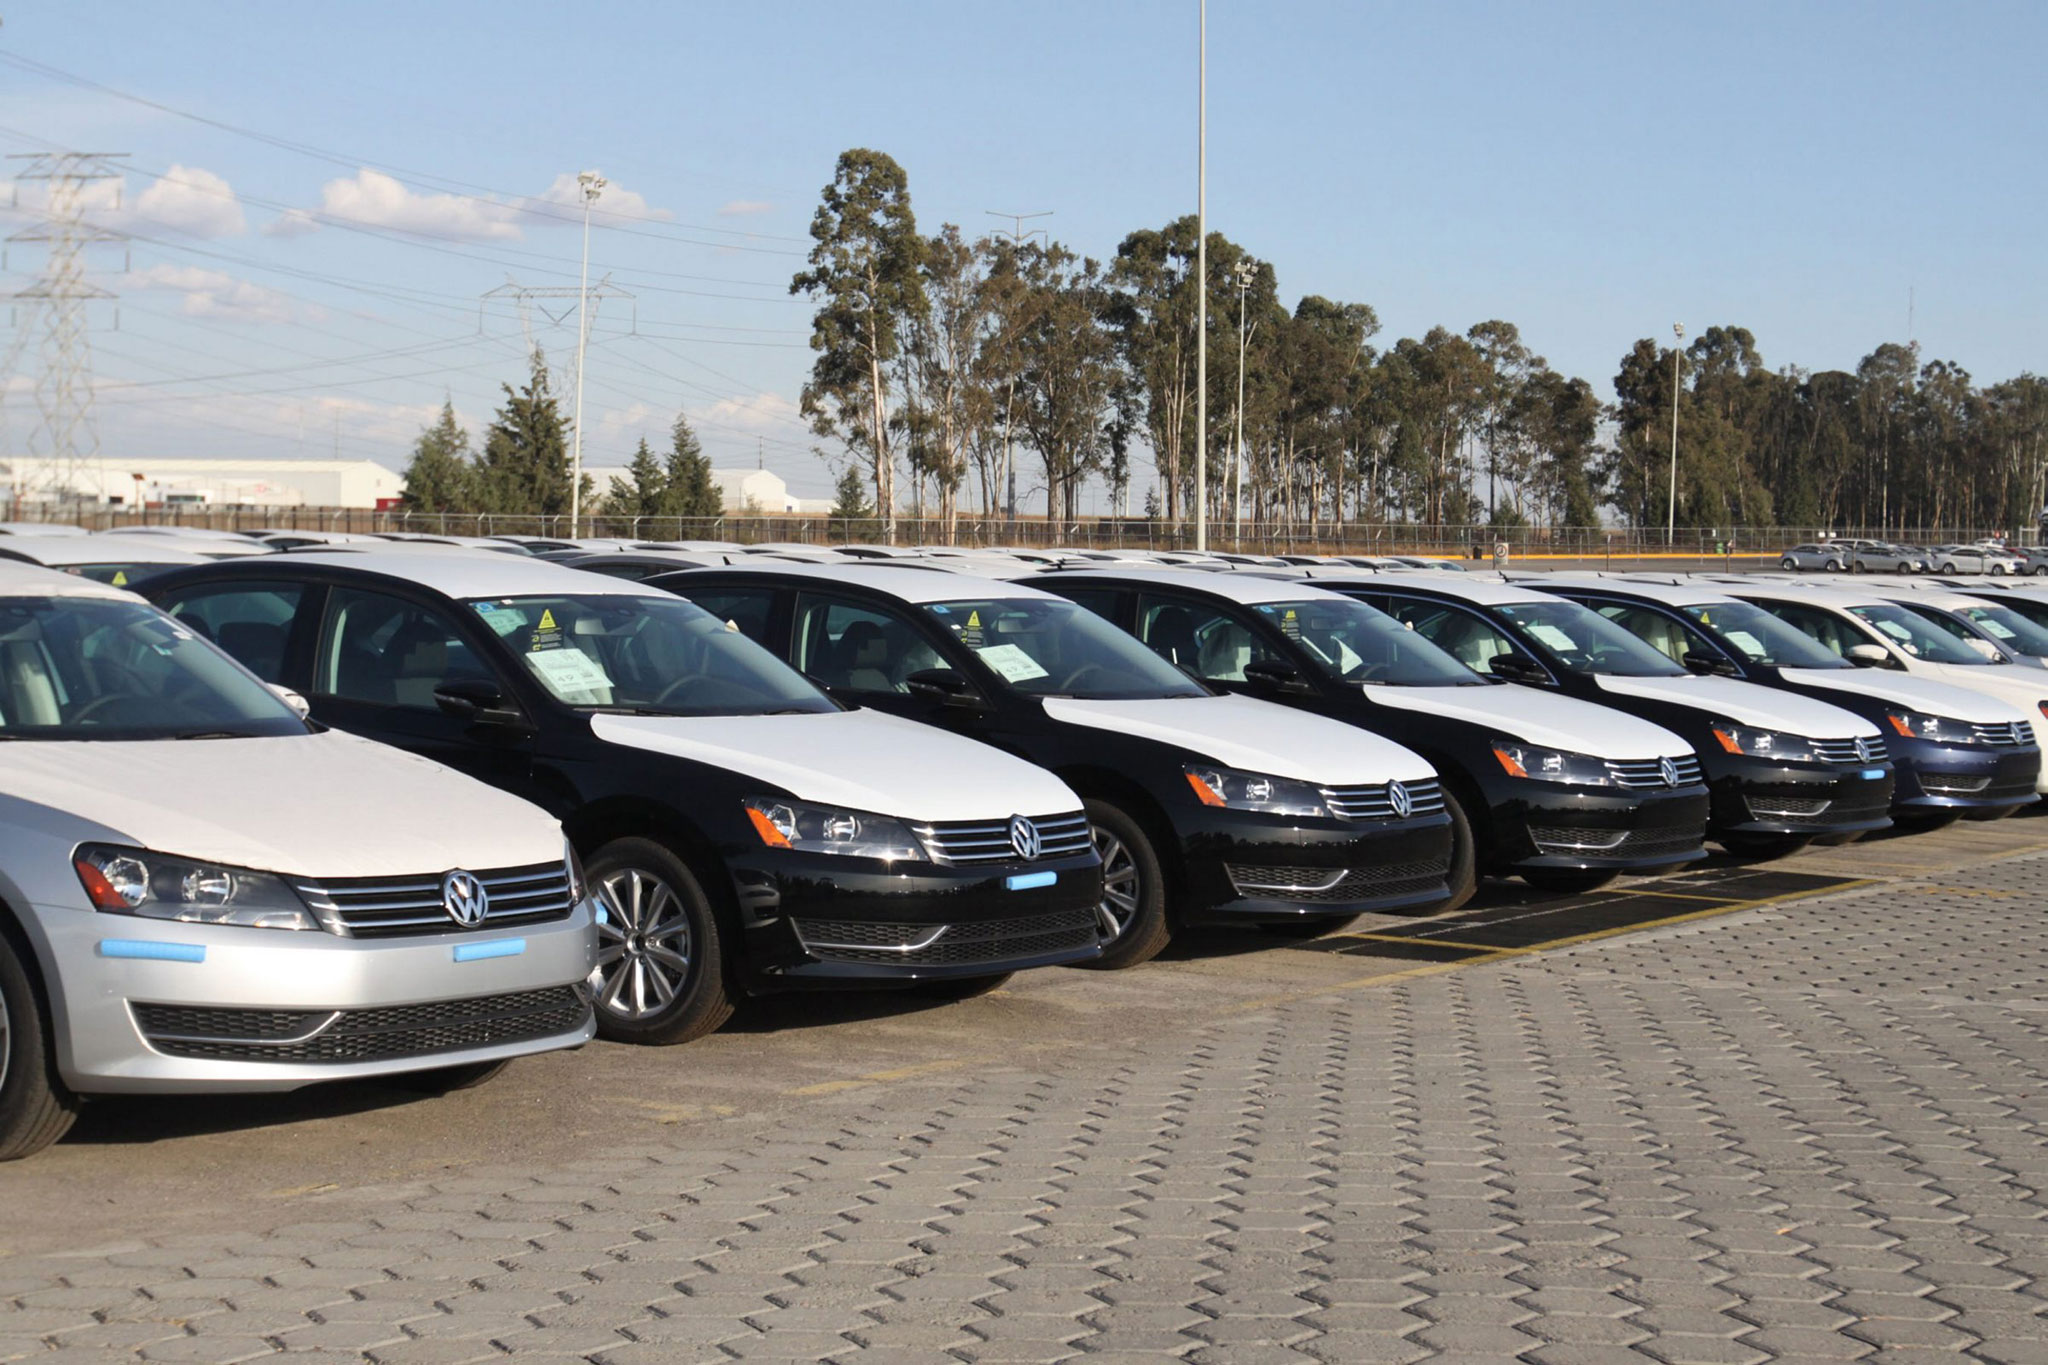 Cluster Industrial - Ventas de vehículos ligeros disminuyen 5.3% en agosto: Amia